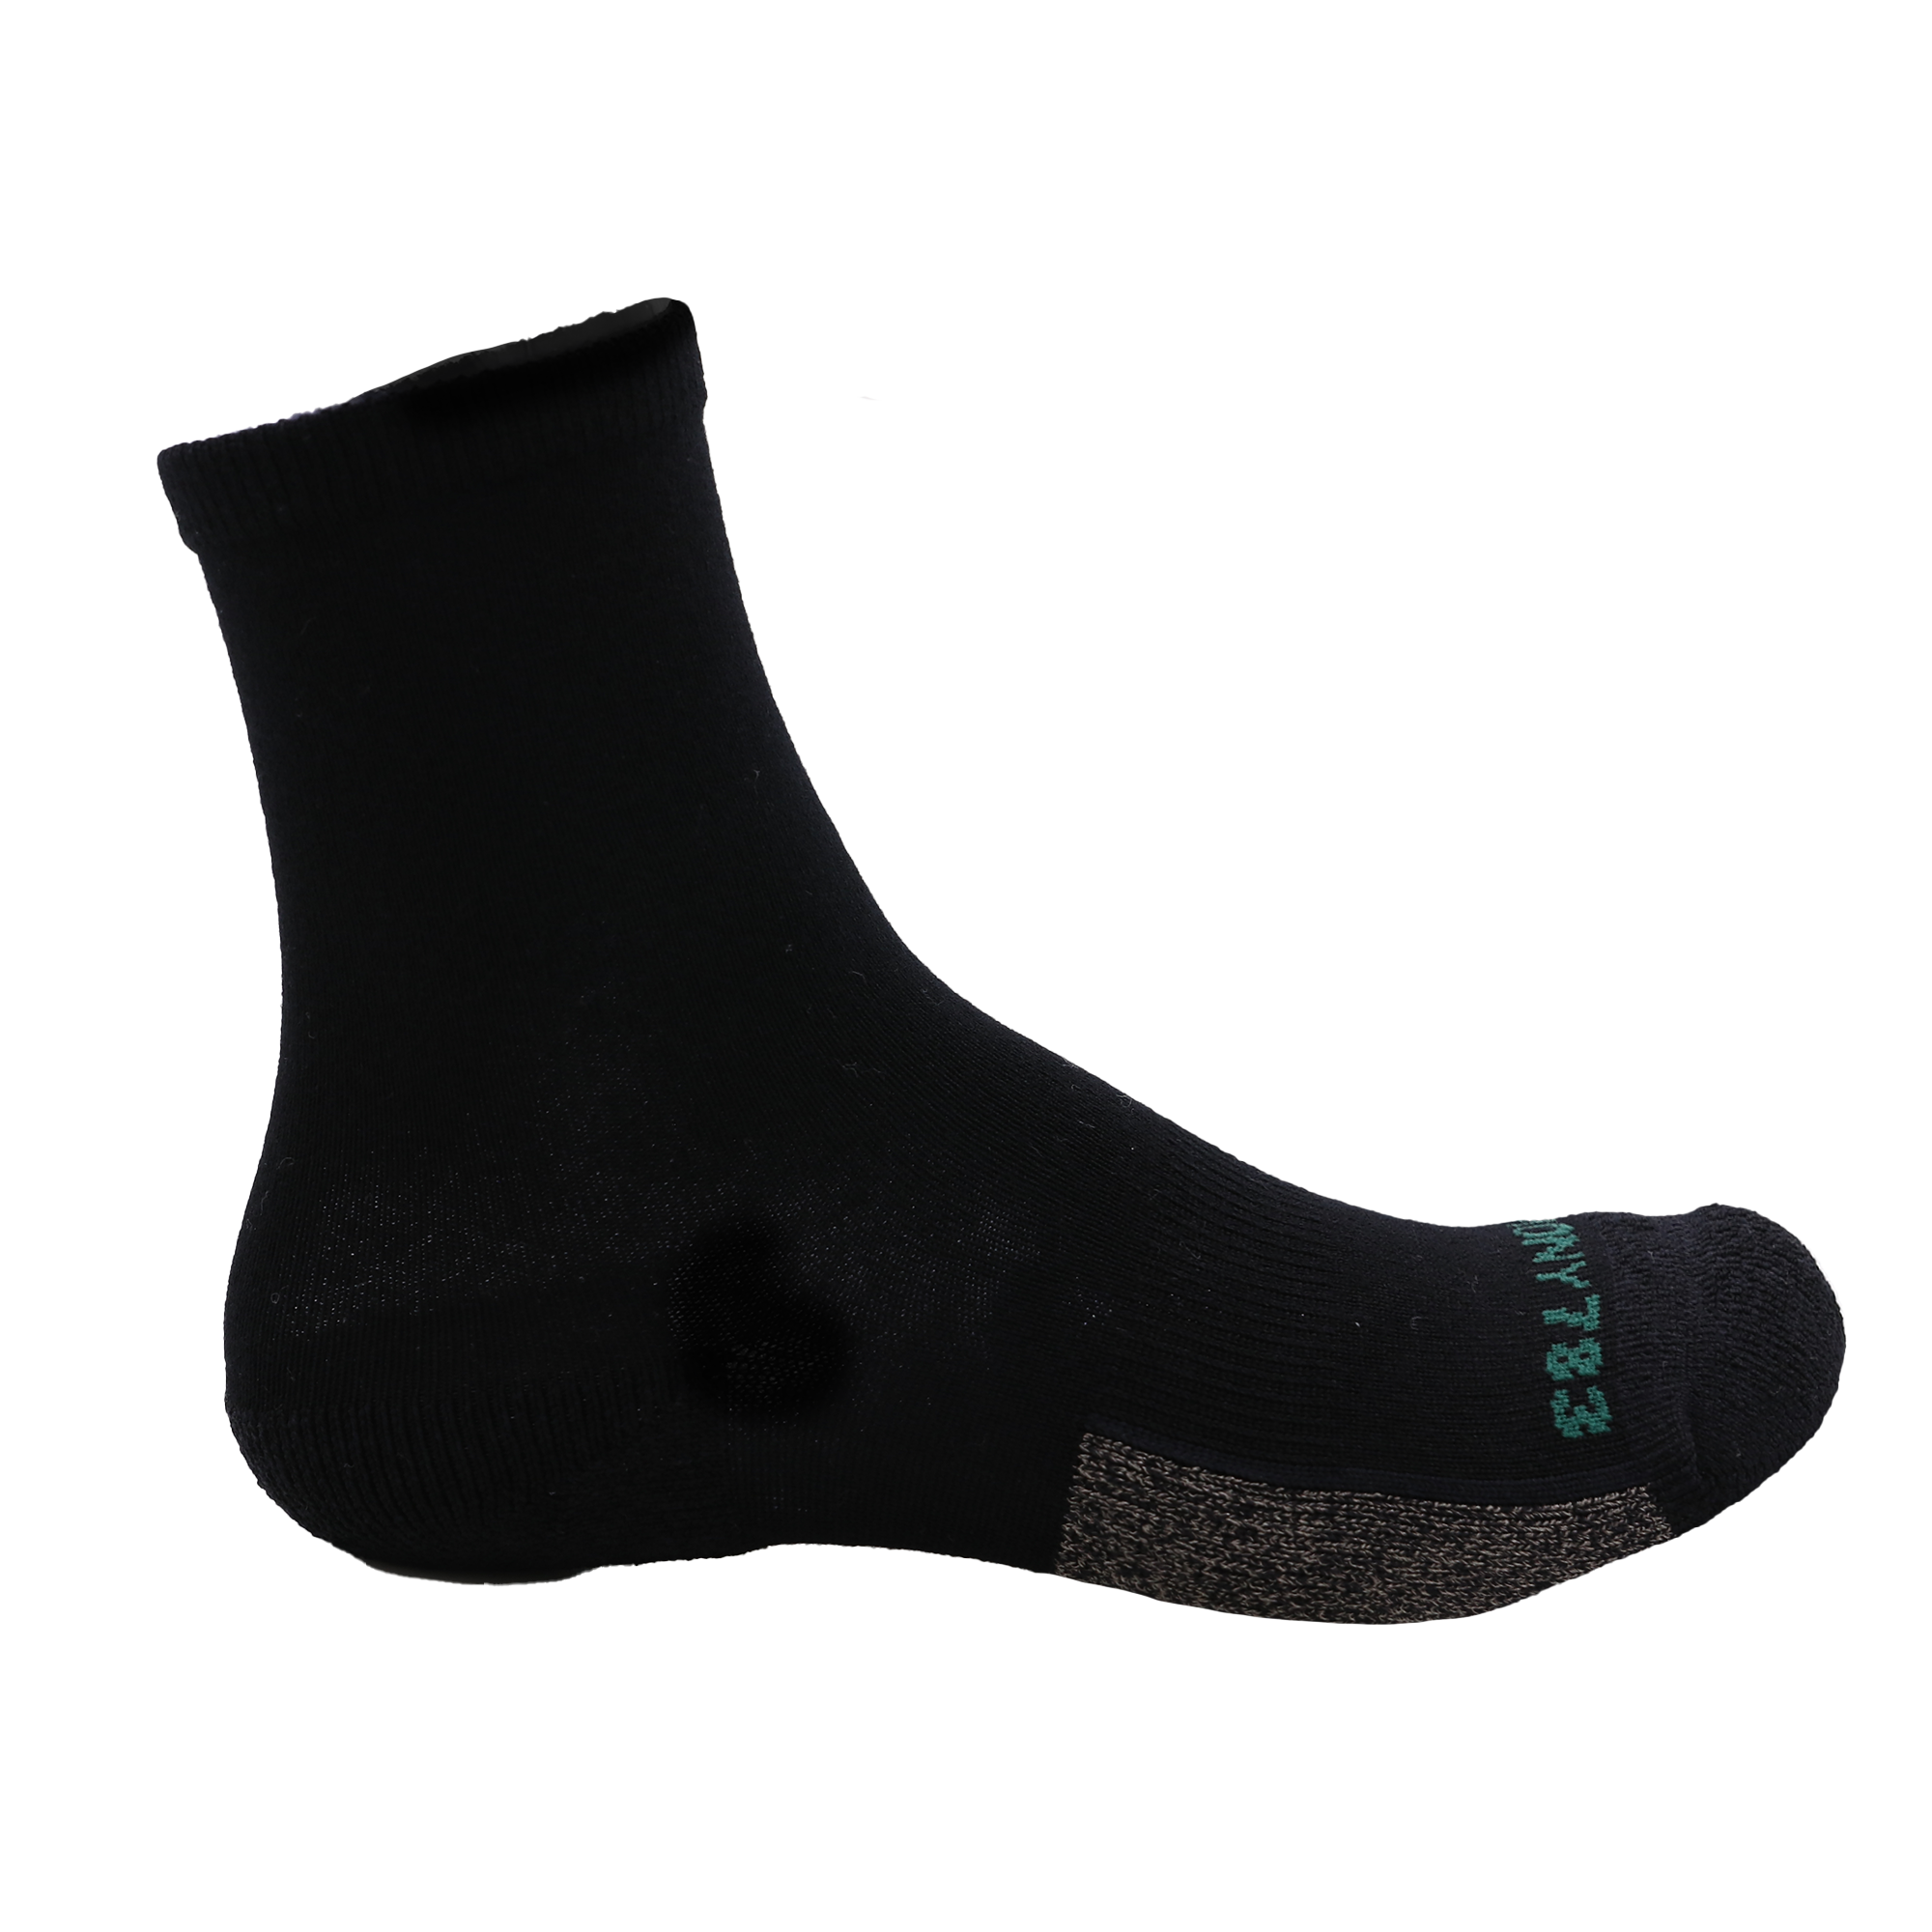 Grounding Crew Socks • Black Merino Wool